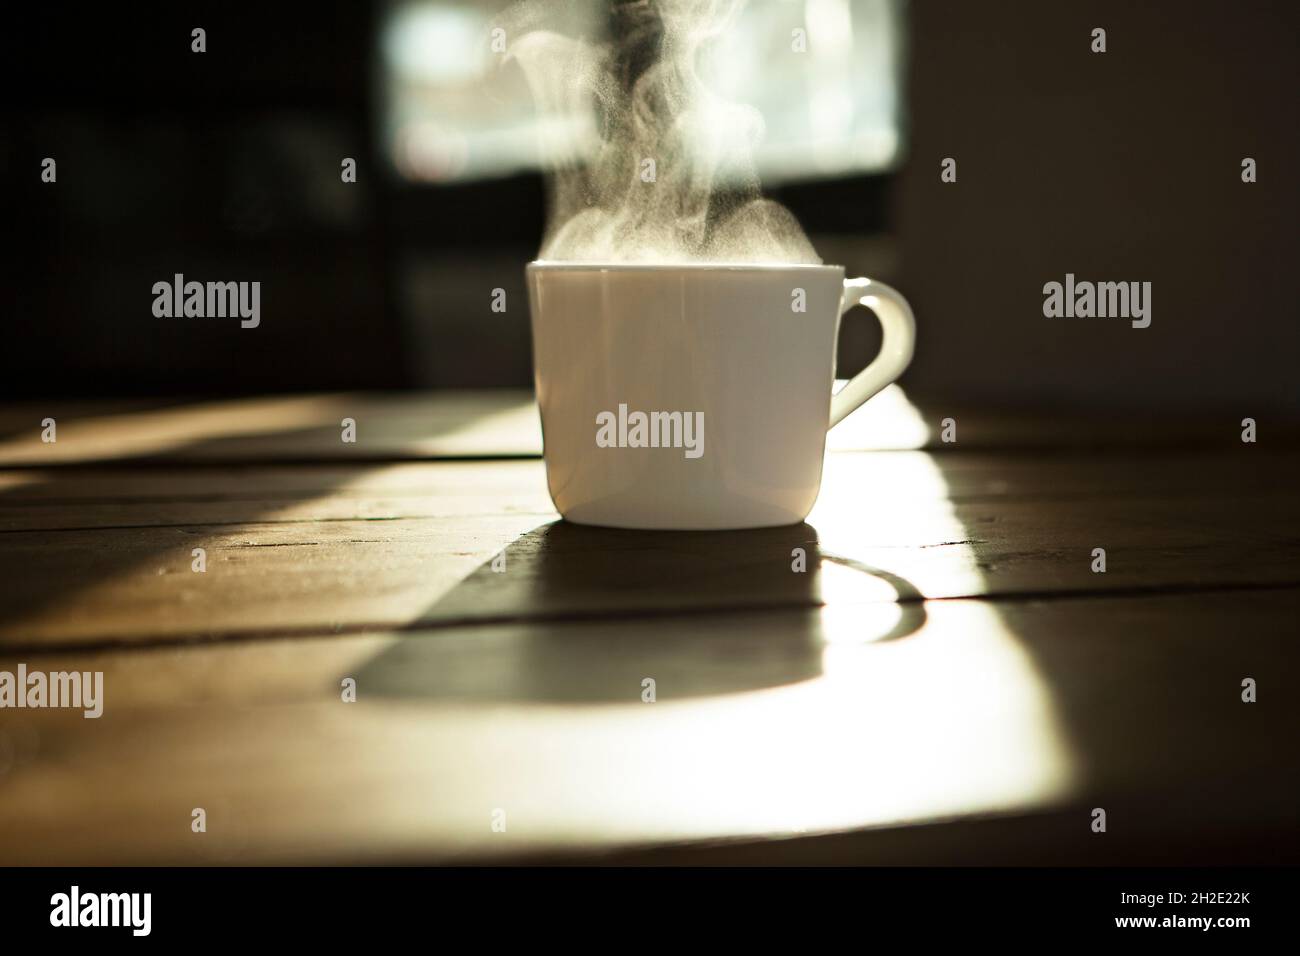 Tazza bianca per tè/caffè, tazza bianca con bevanda calda su un tavolo di legno, retroilluminata. Foto Stock